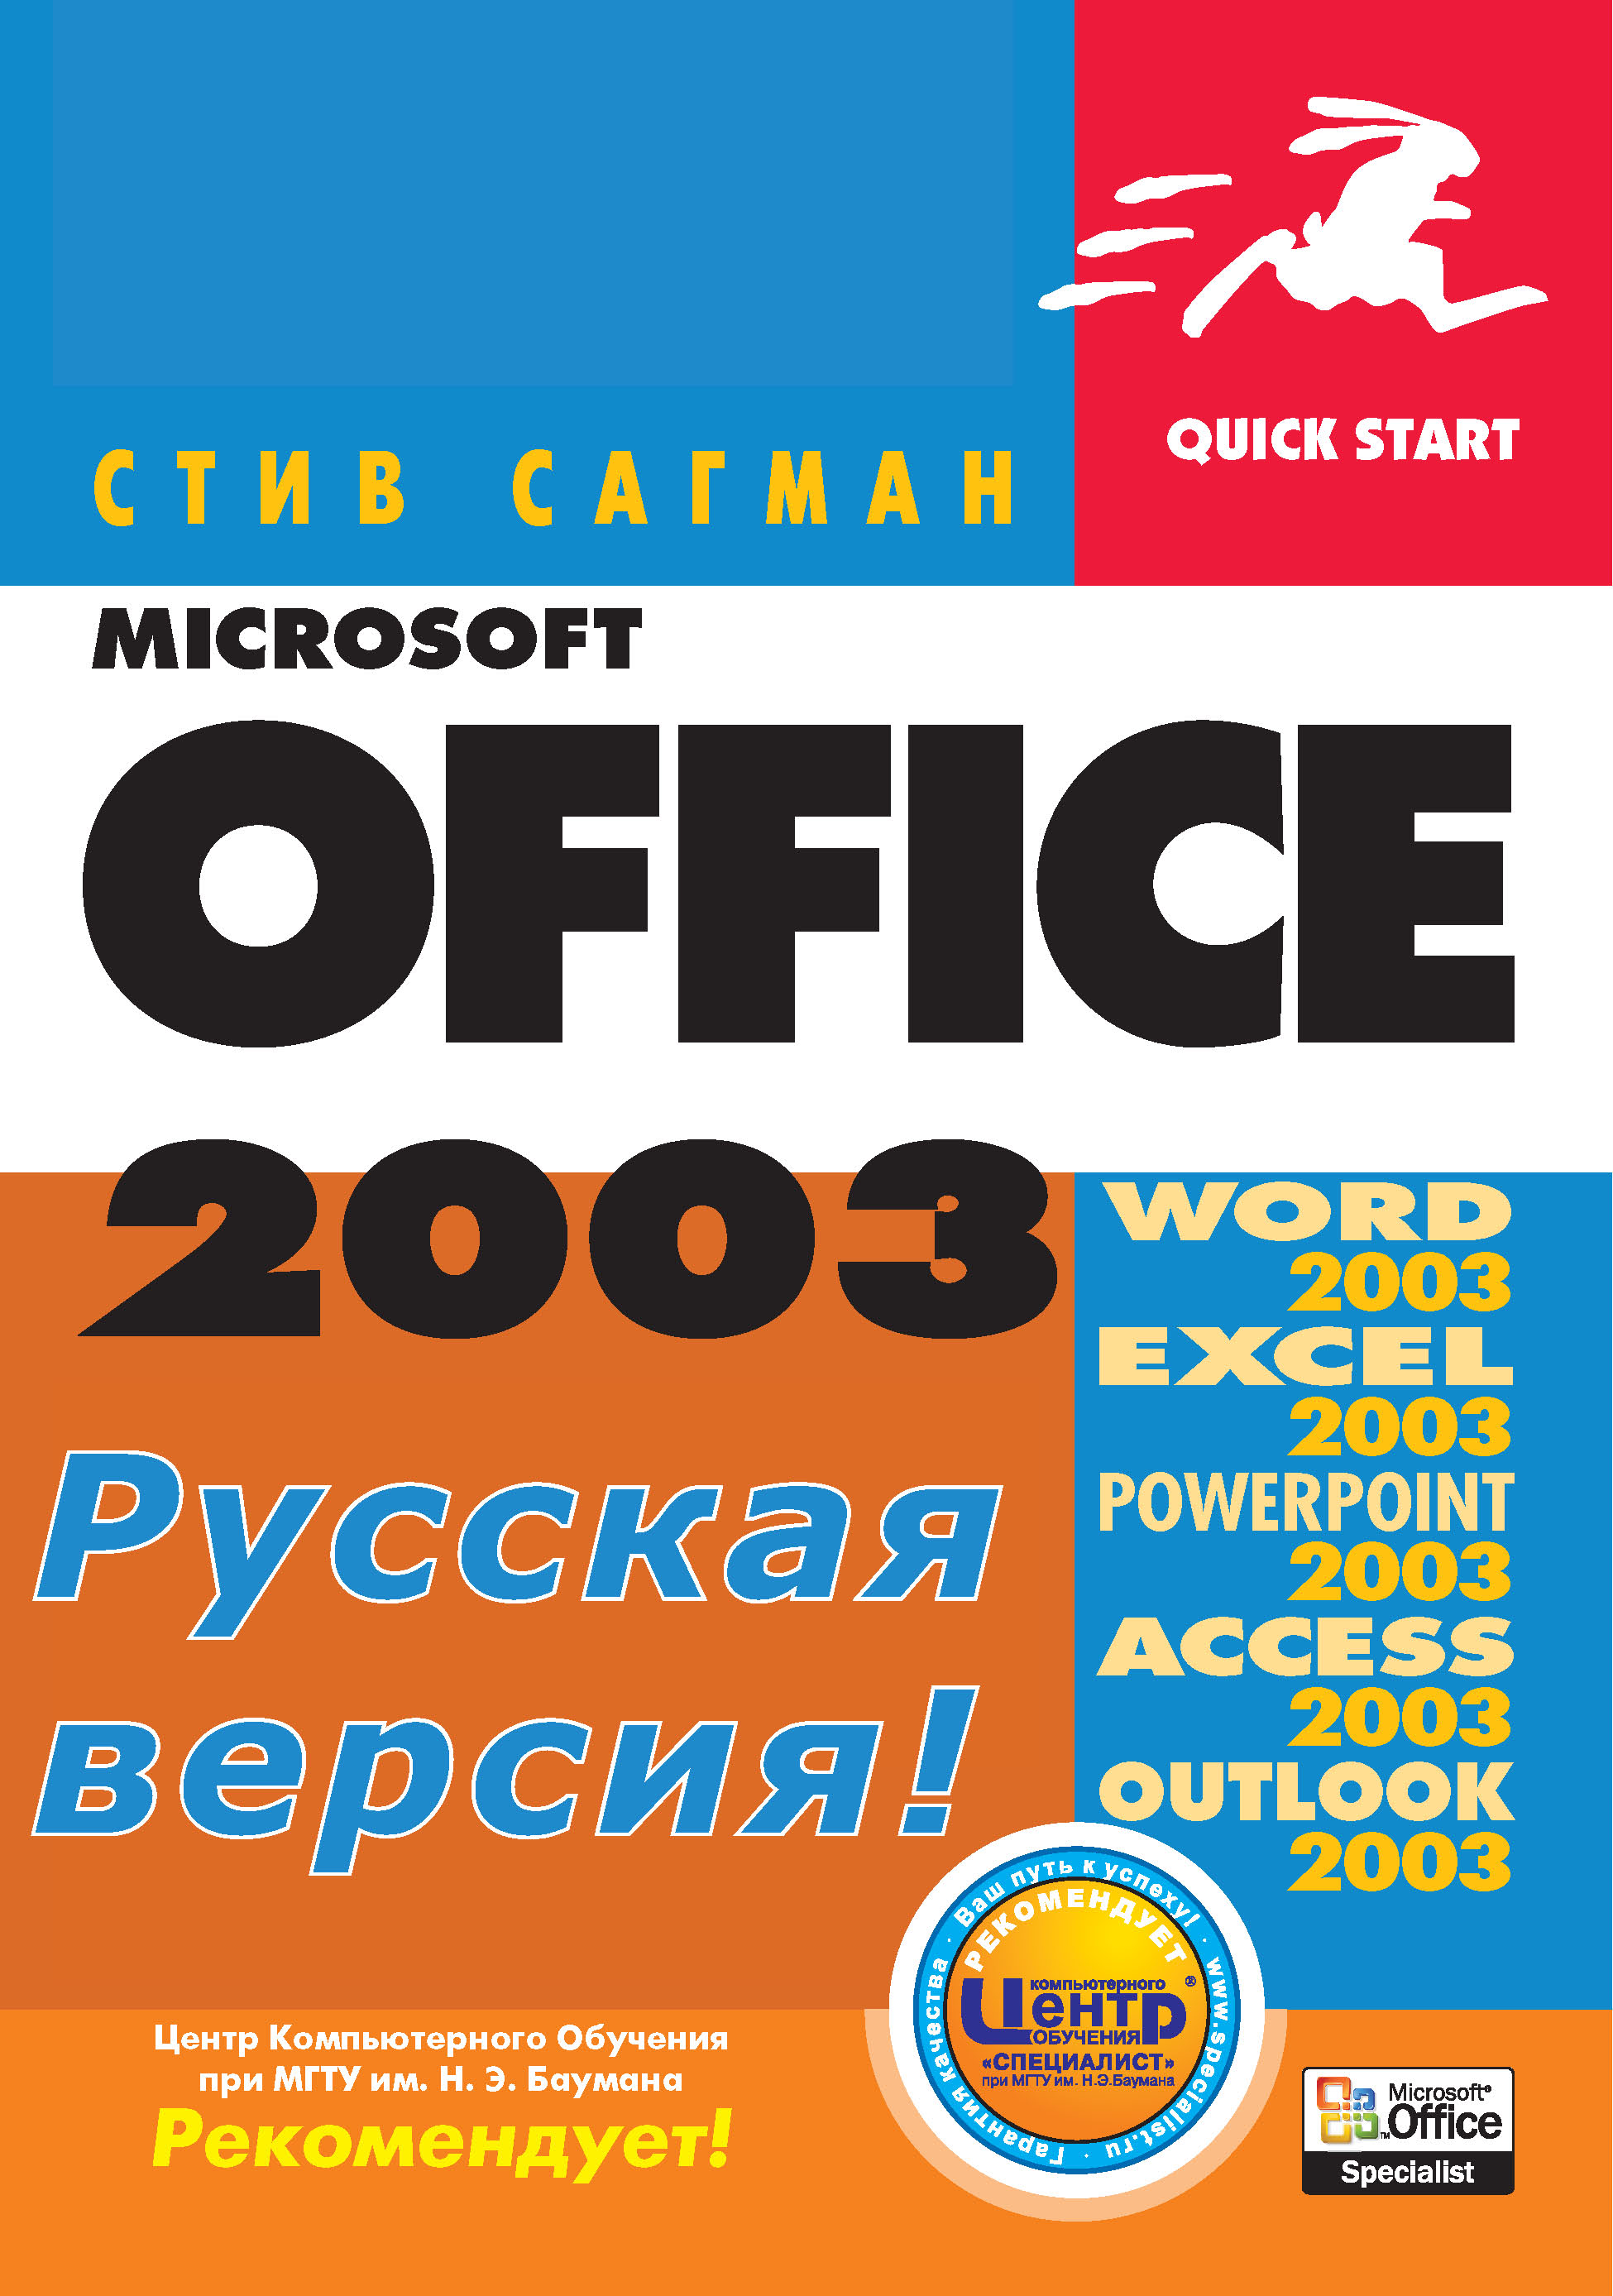 Книга Quick start Microsoft Office 2003 для Windows созданная Стив Сагман, А. И. Осипов может относится к жанру зарубежная компьютерная литература, зарубежная справочная литература, программы, руководства. Стоимость электронной книги Microsoft Office 2003 для Windows с идентификатором 22785070 составляет 119.00 руб.